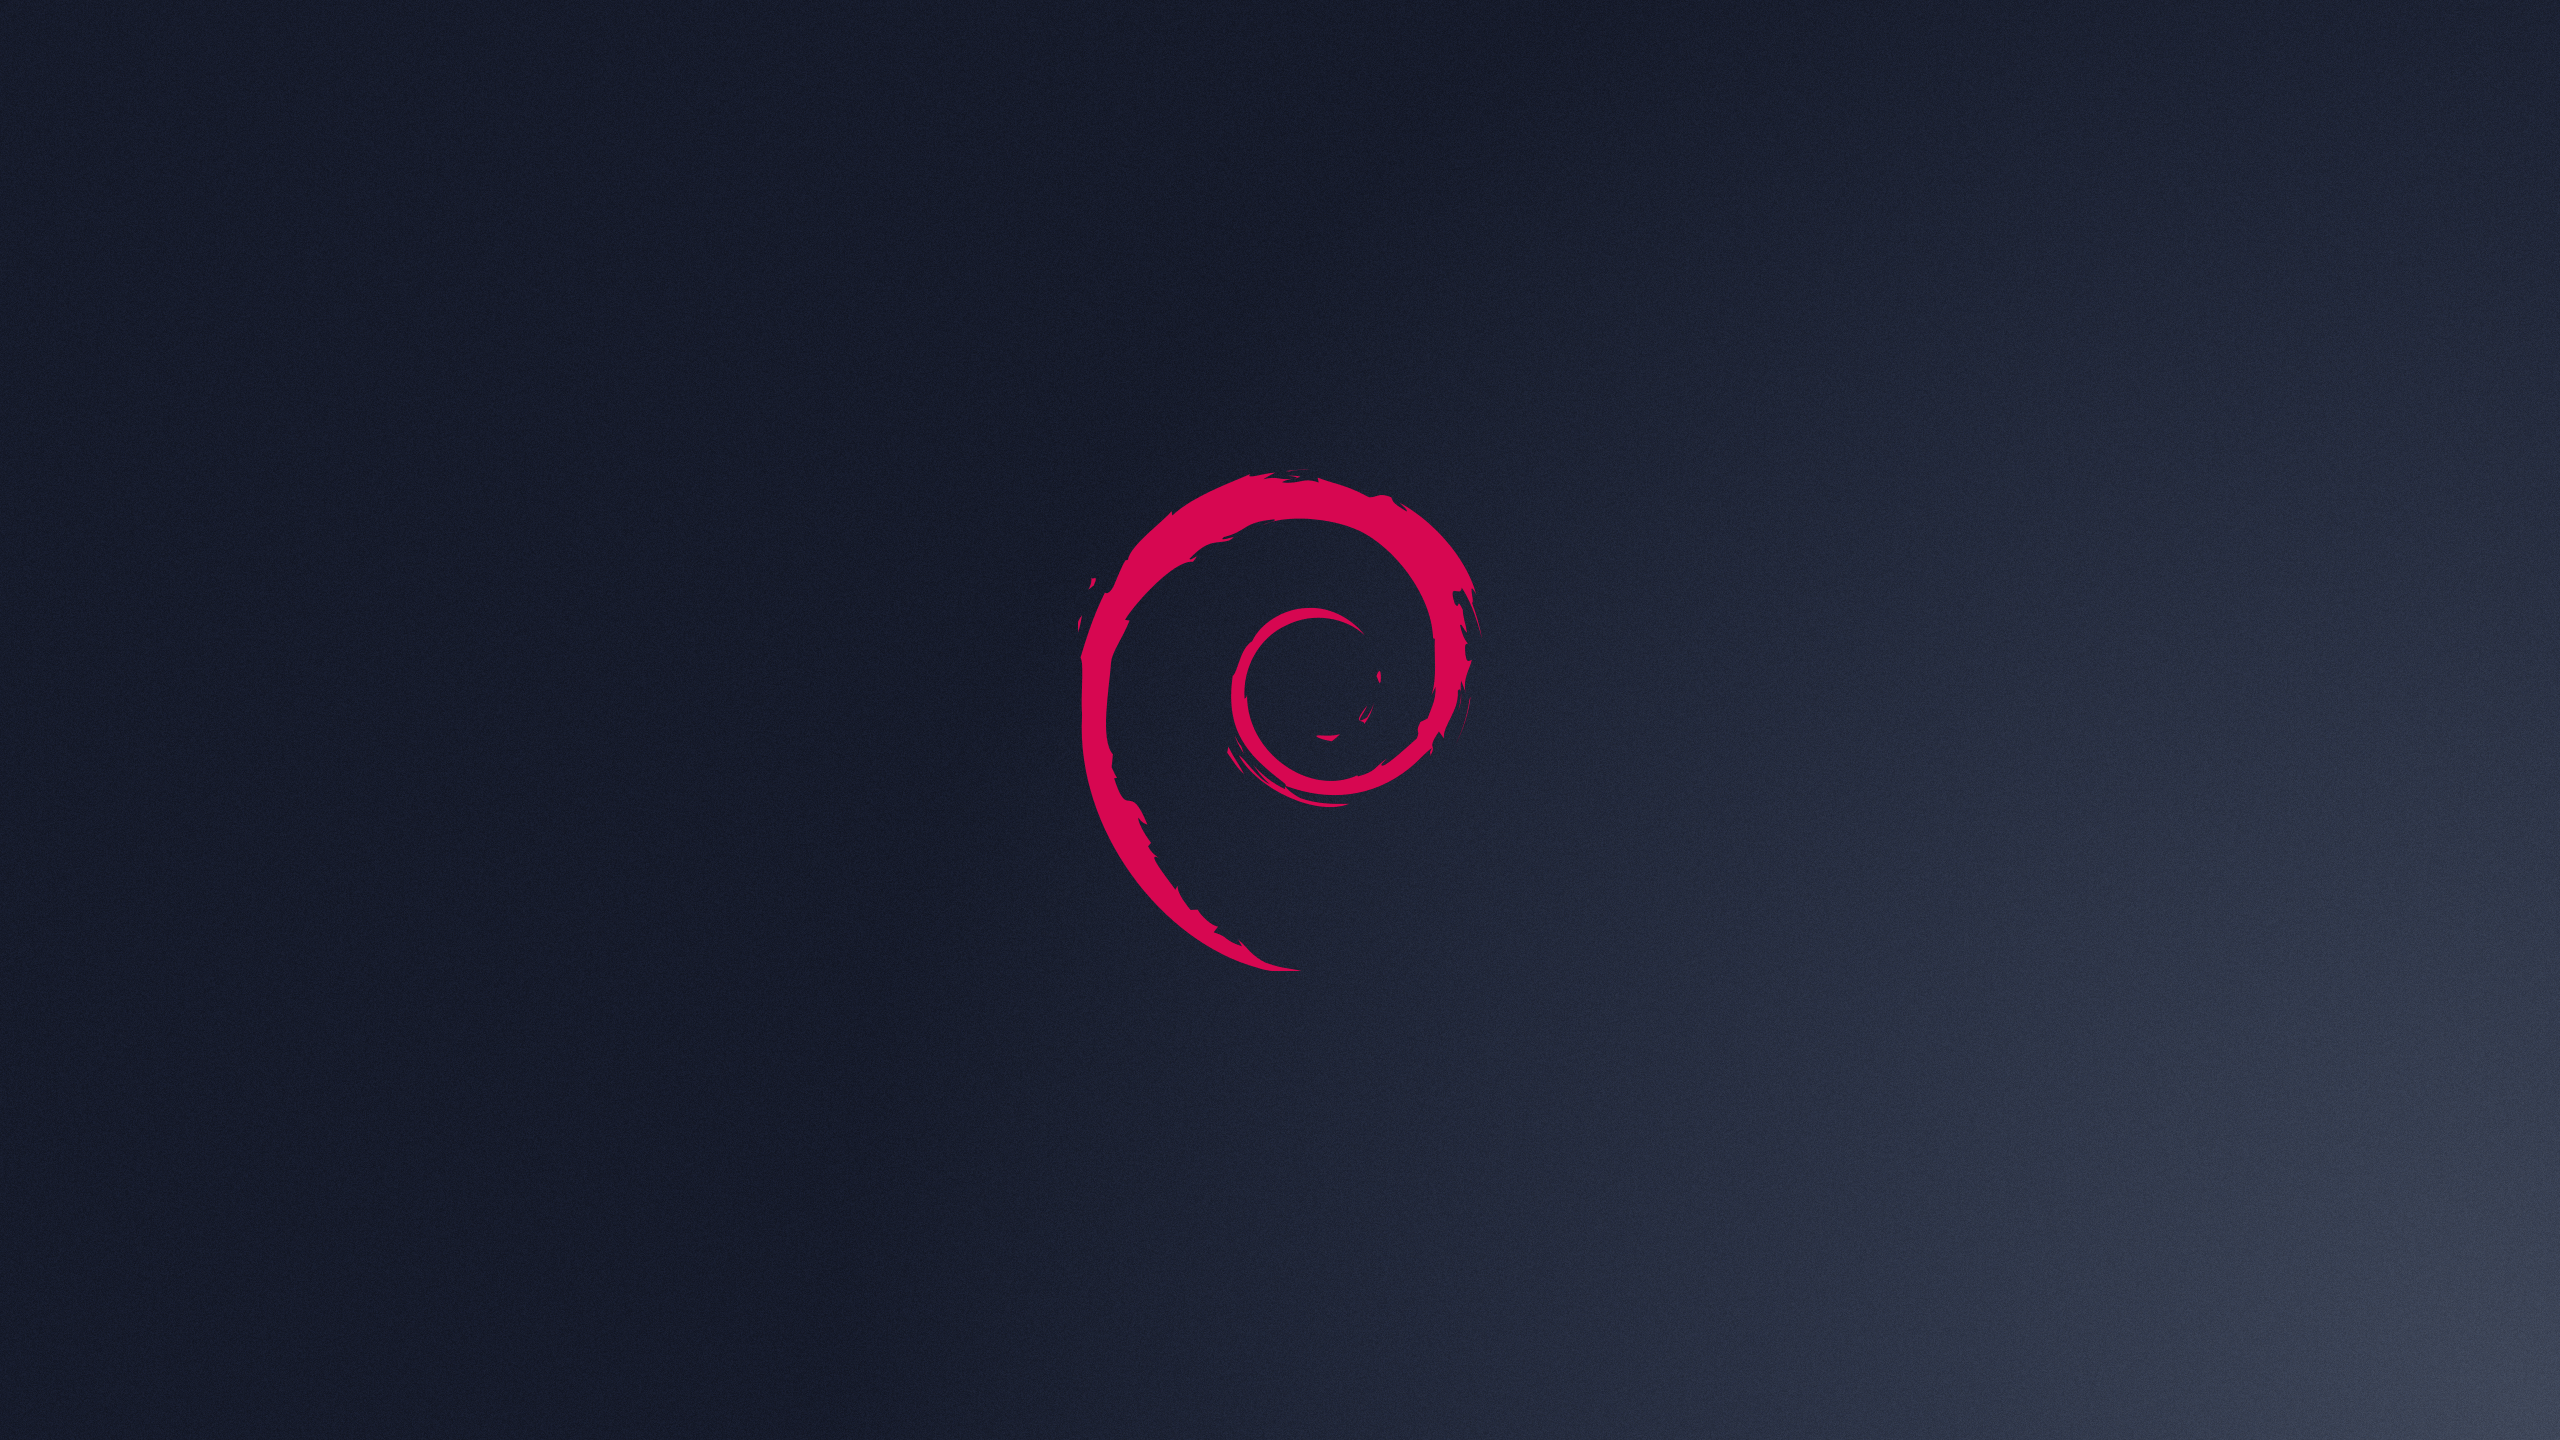 Debian Logo - Free Debian Logo Wallpaper 40685 2560x1440px